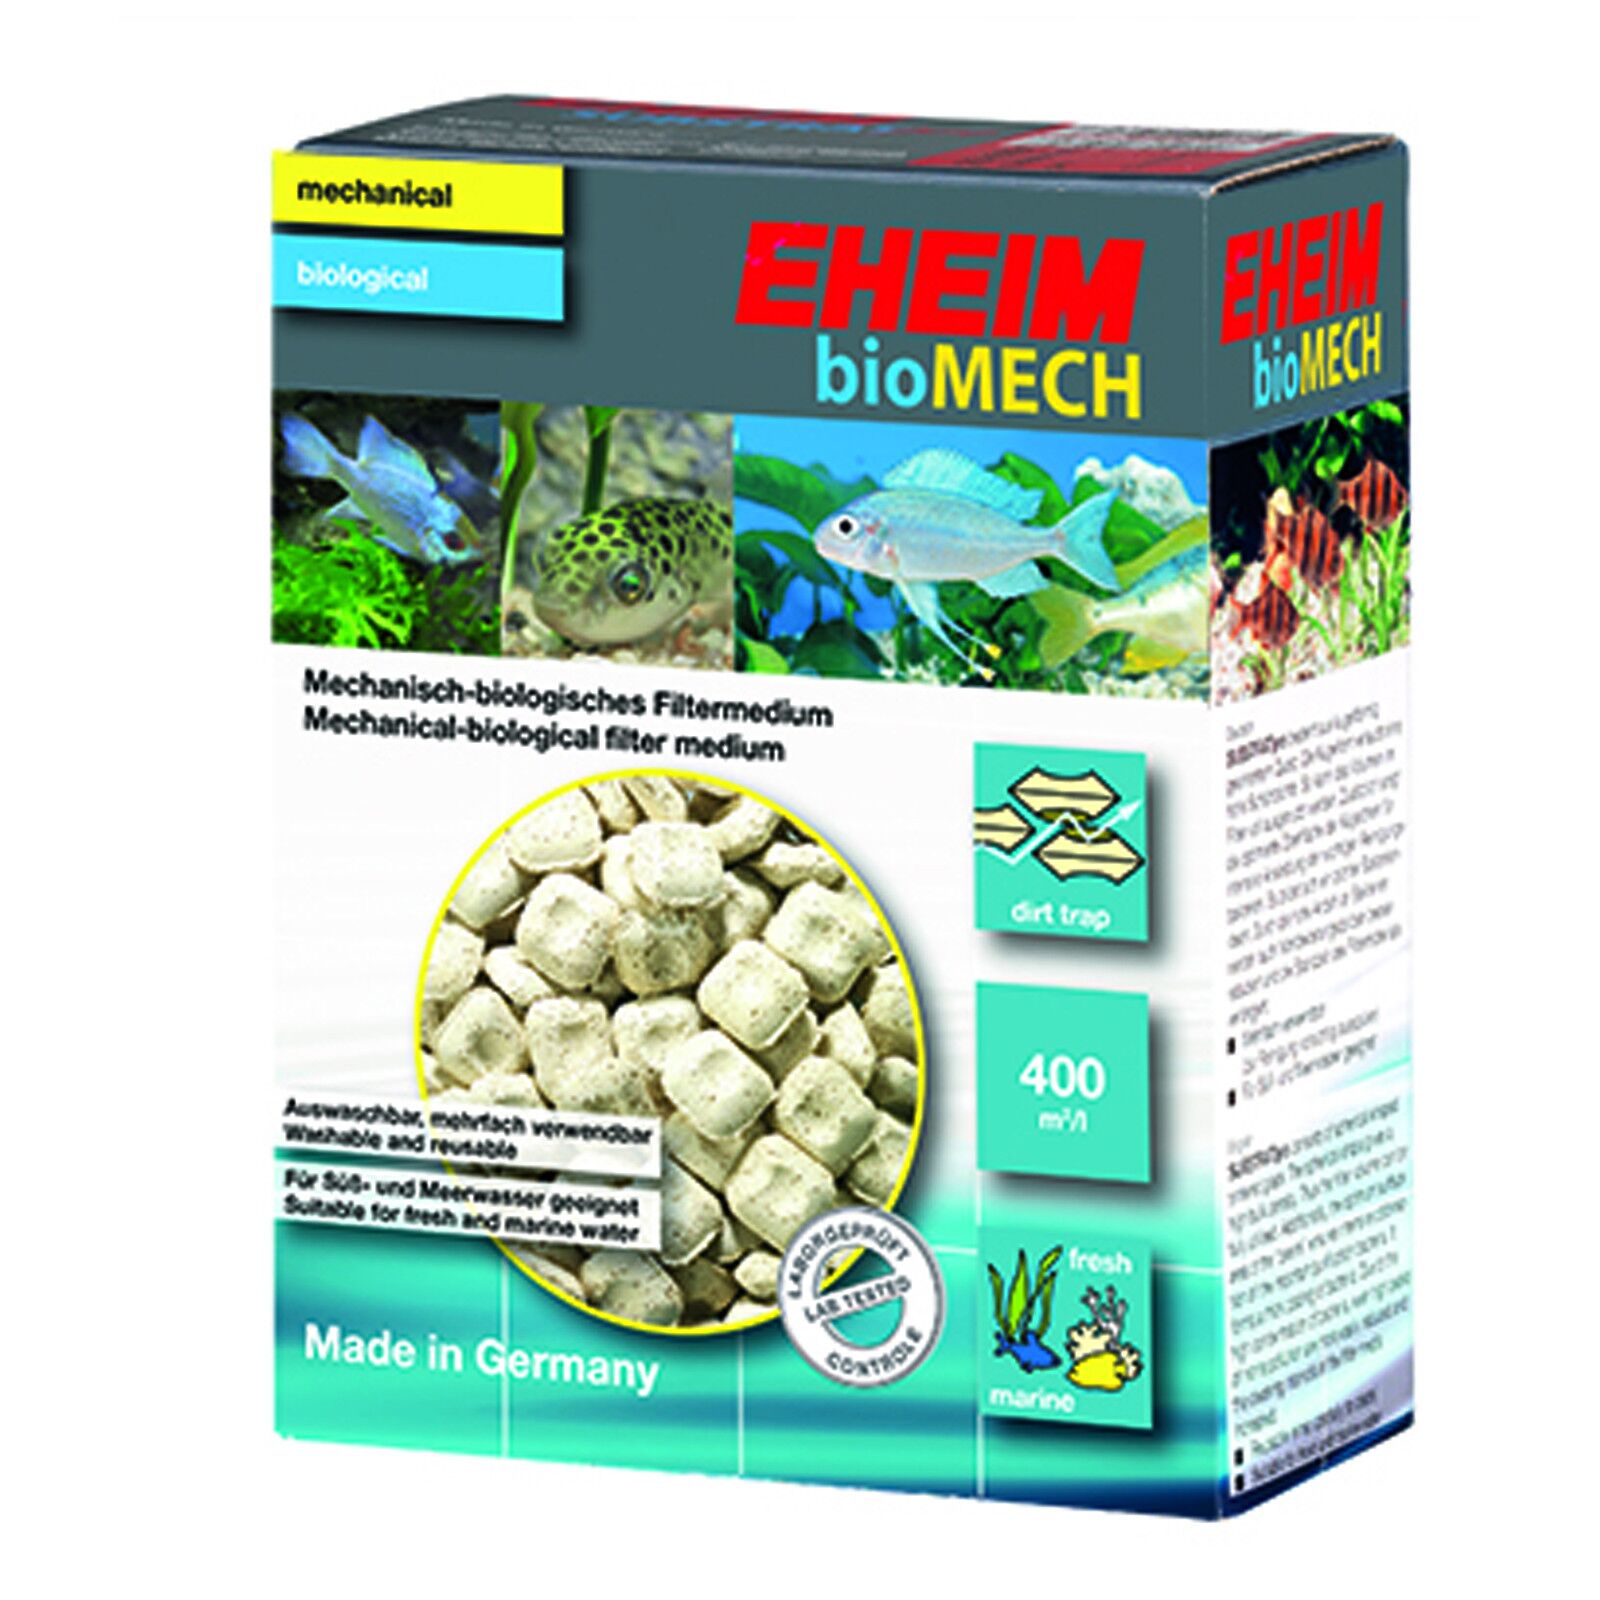 EHEIM - bioMECH